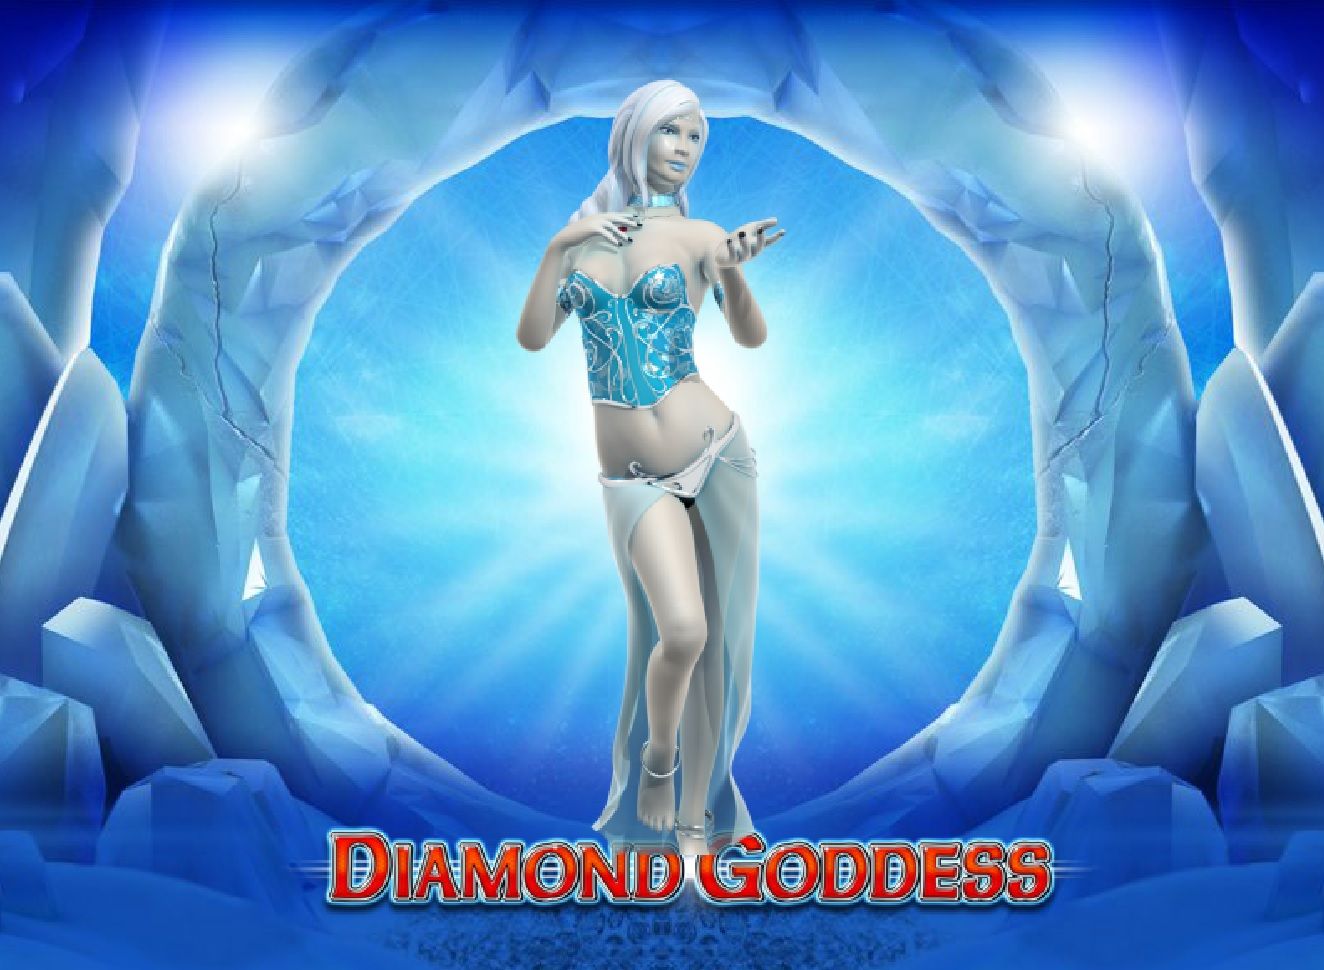 Diamond Goddess Online Slot Game